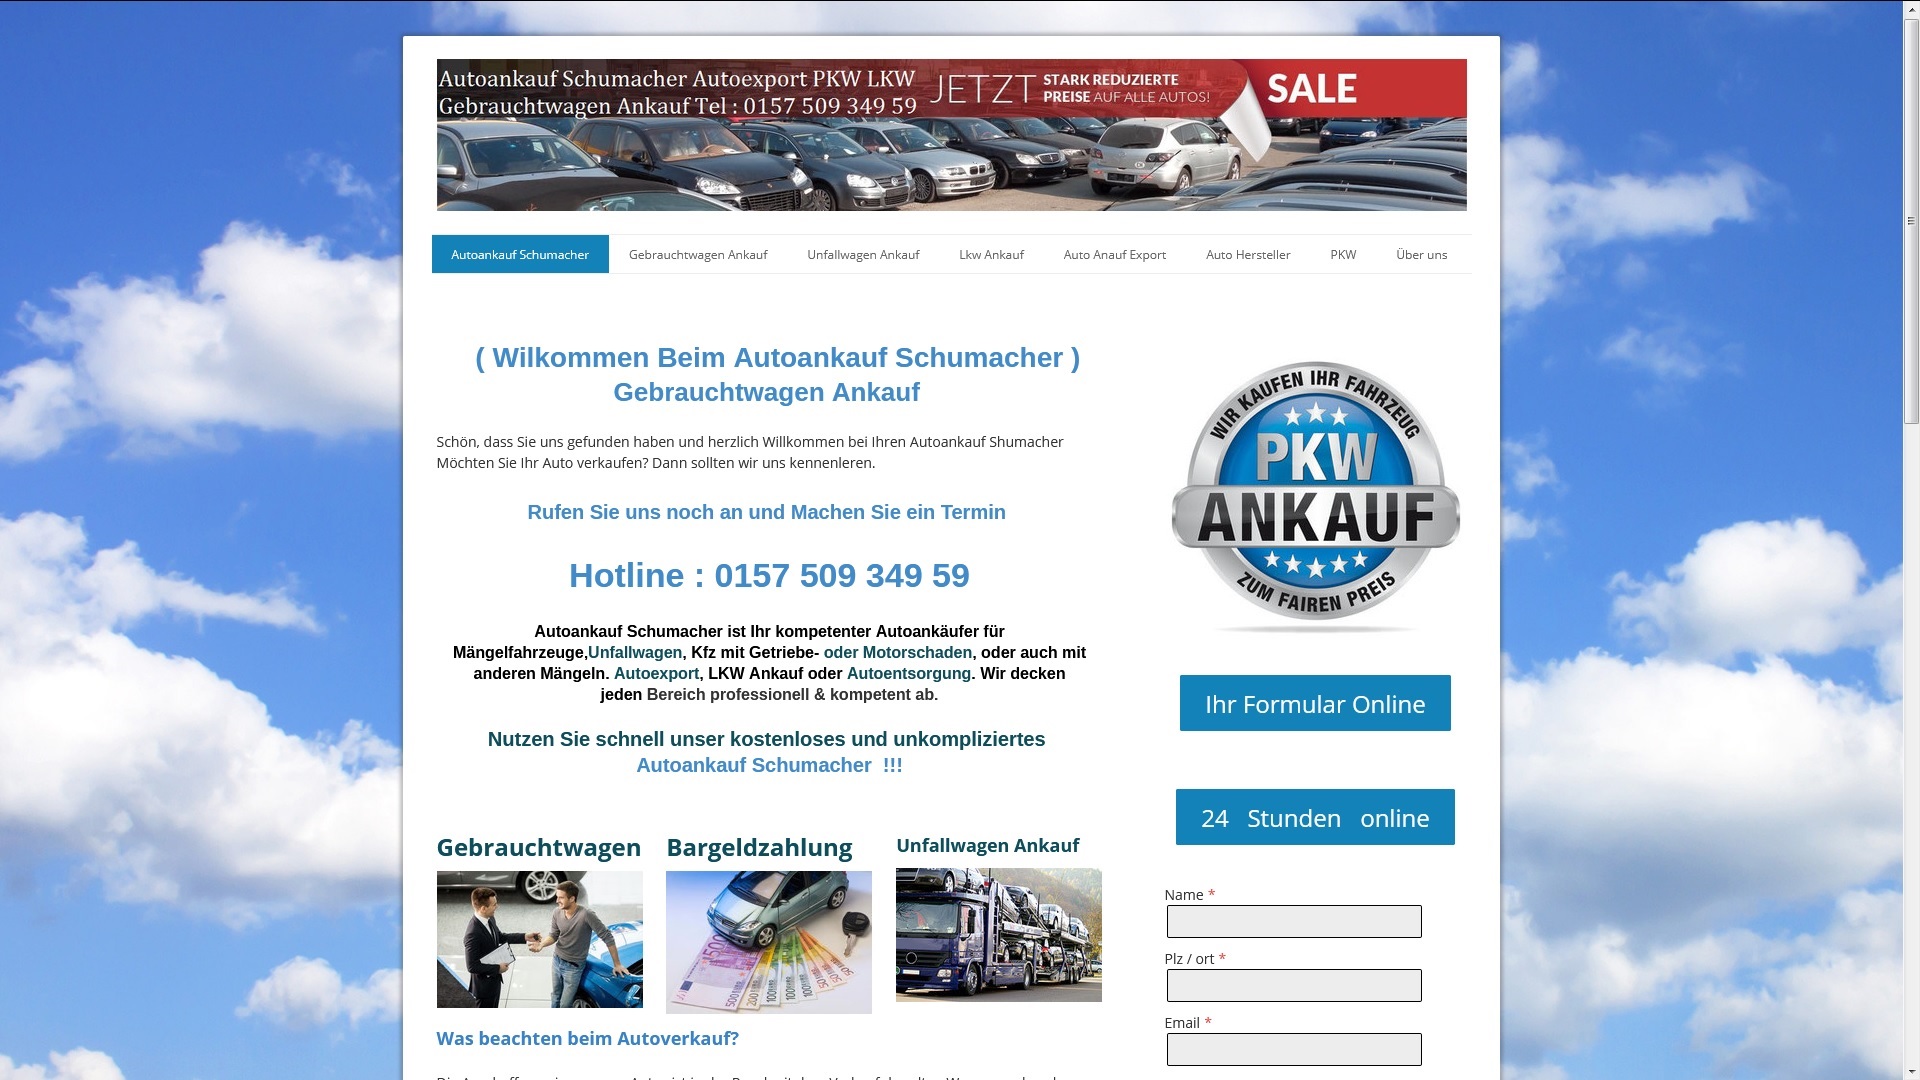 Unkomplizierter Autoankauf in Kassel | von AutoAnkauf Schumacher.de